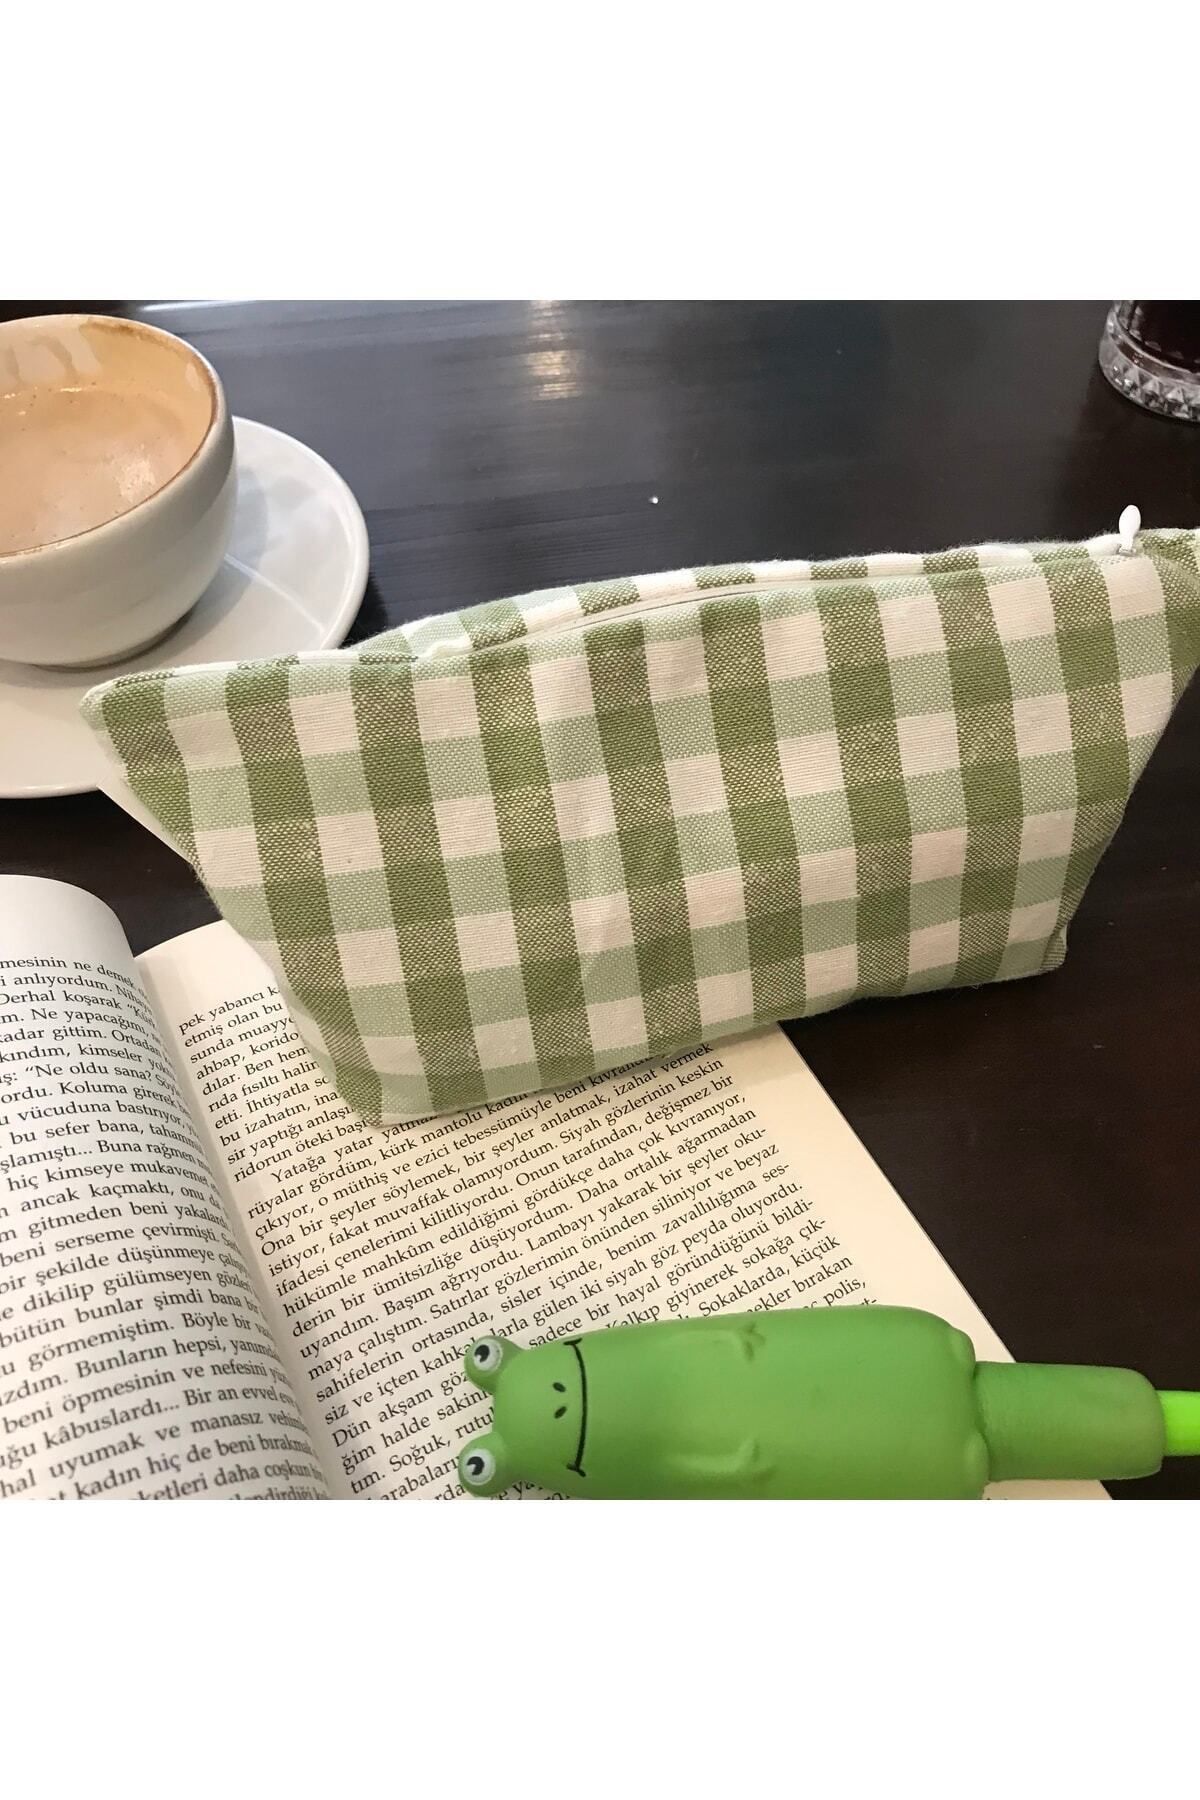 Sumicorn Design Yeşil Pötikareli Yıkanabilir Fermuarlı Tek Gözlü Bez Kalemlik Kalem Kutusu Cüzdan Makyaj Çantası